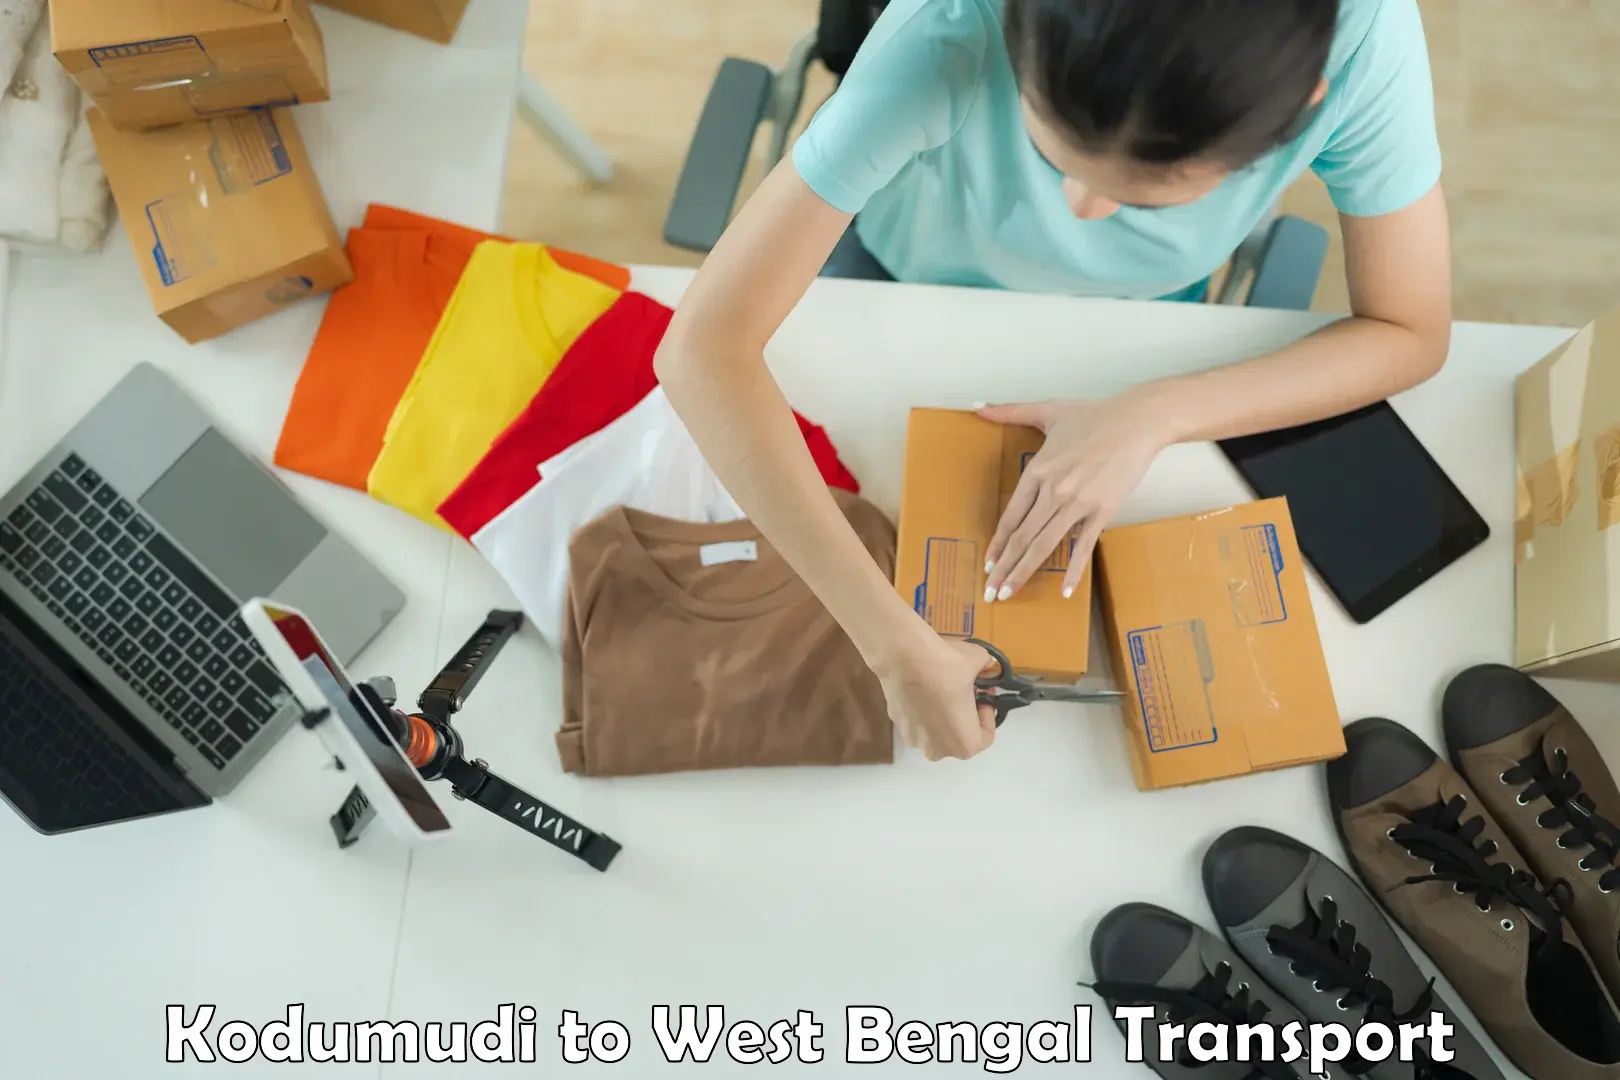 Air cargo transport services Kodumudi to Durgapur